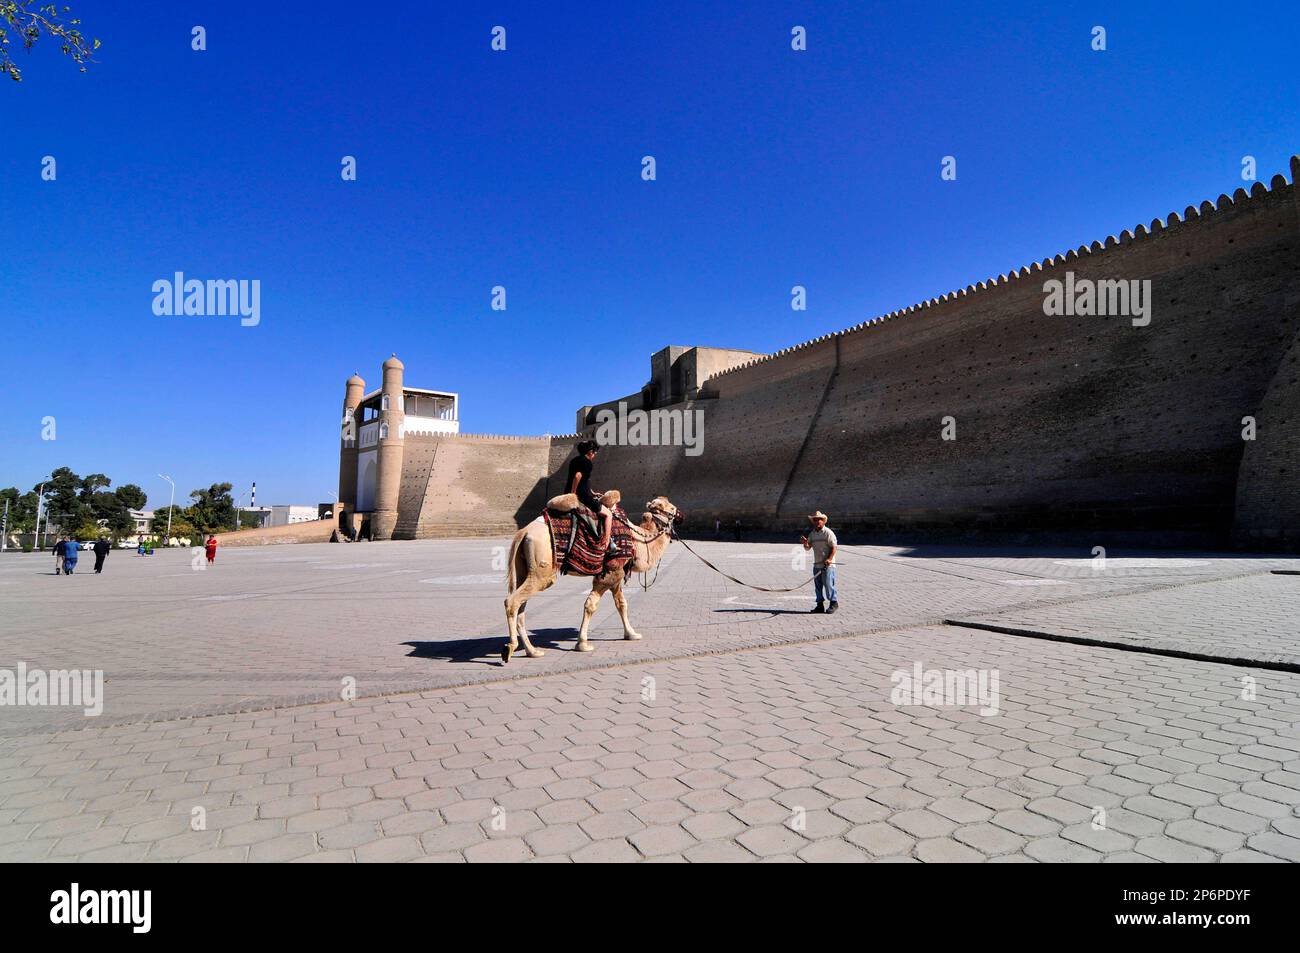 Eine einheimische usbekische Frau sitzt auf einem Kamel an der Arche Bukhara, einer riesigen Festung im Herzen der Altstadt von Bukhara, Usbekistan. Stockfoto